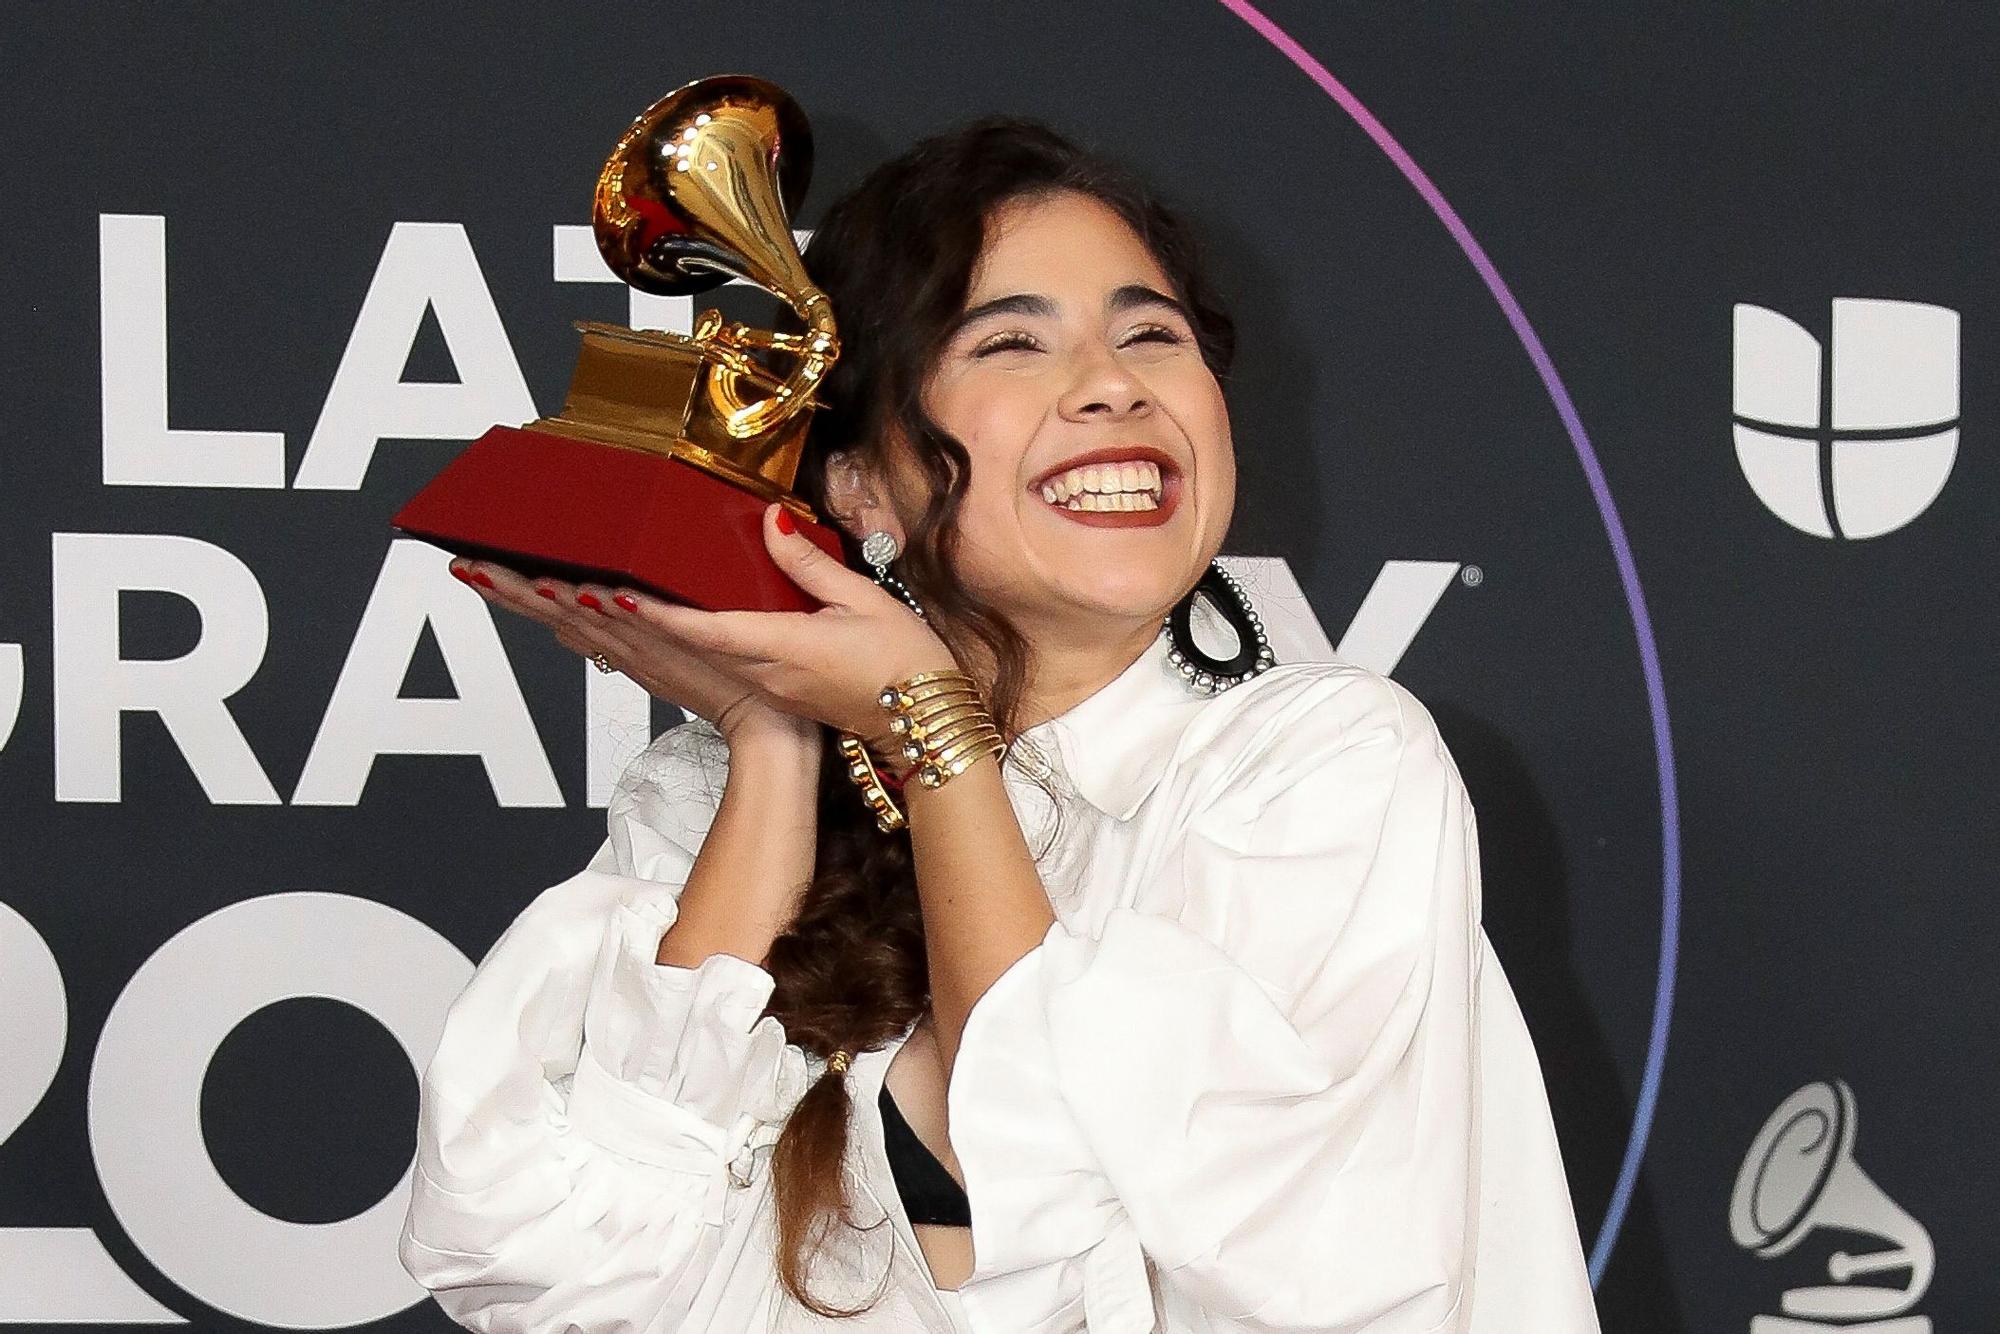 Les millors imatges dels Grammy Latino